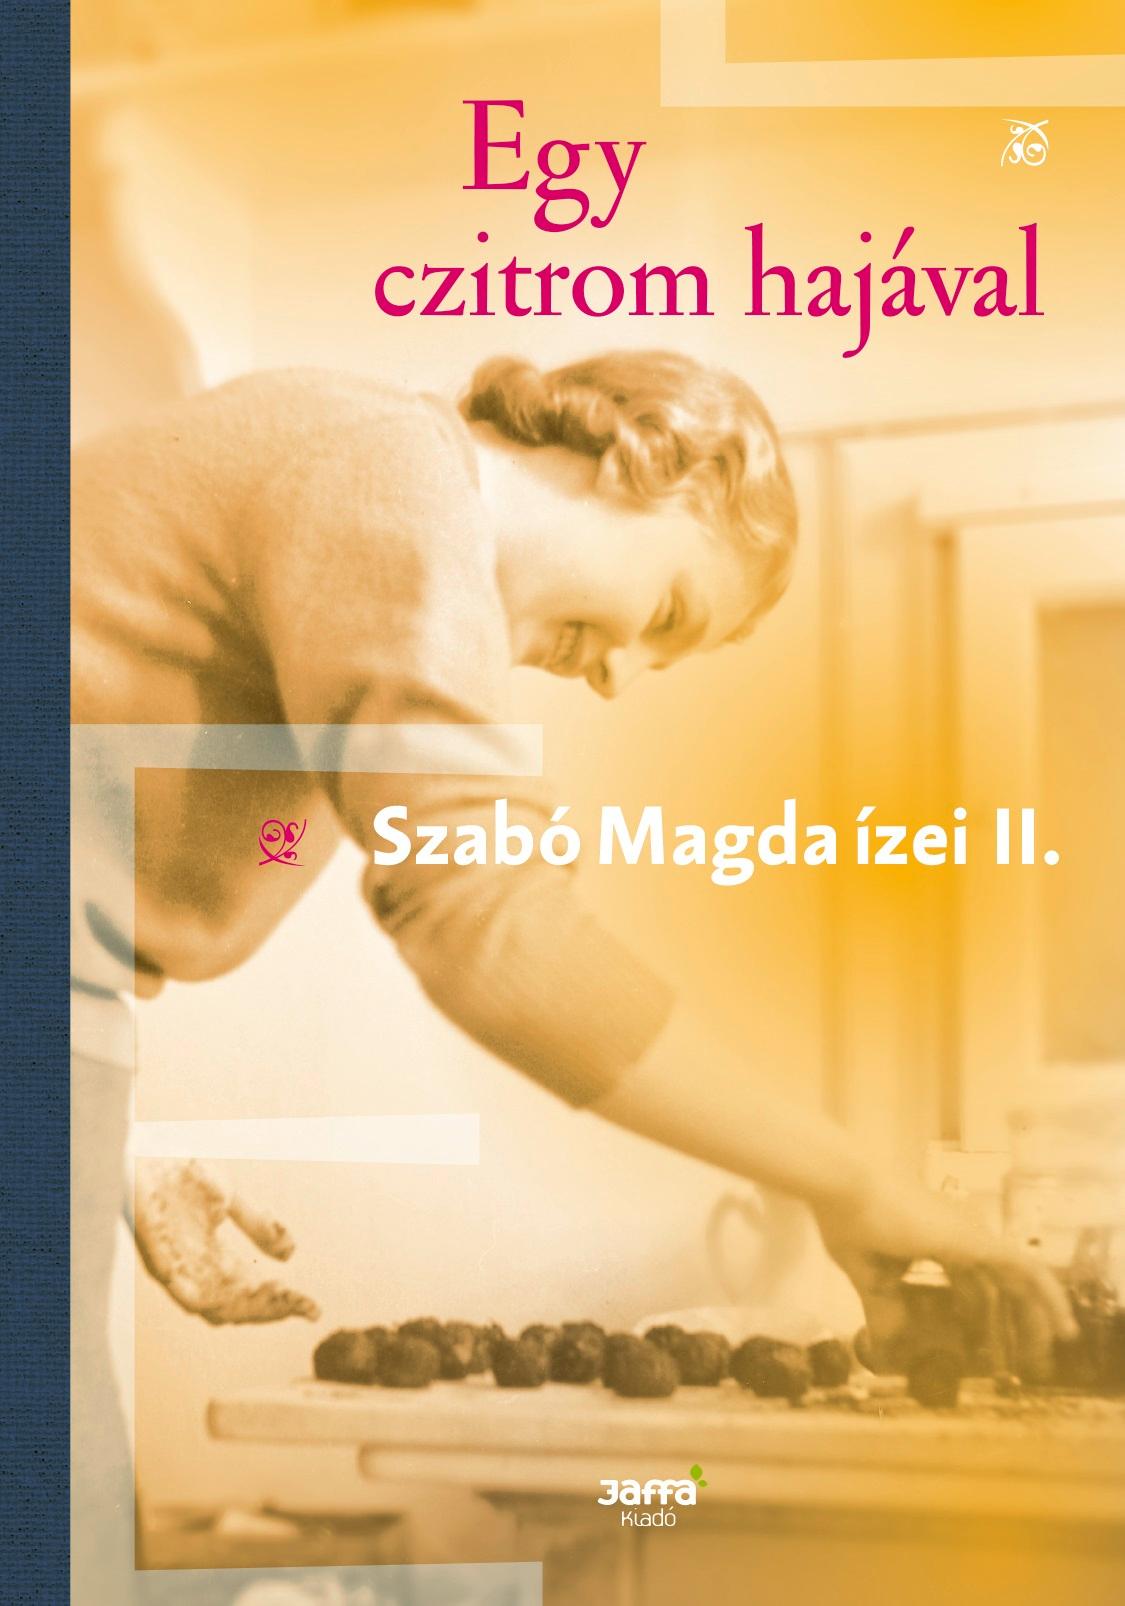 SZABÓ MAGDA - Egy czitrom hajával - Szabó Magda ízei II.